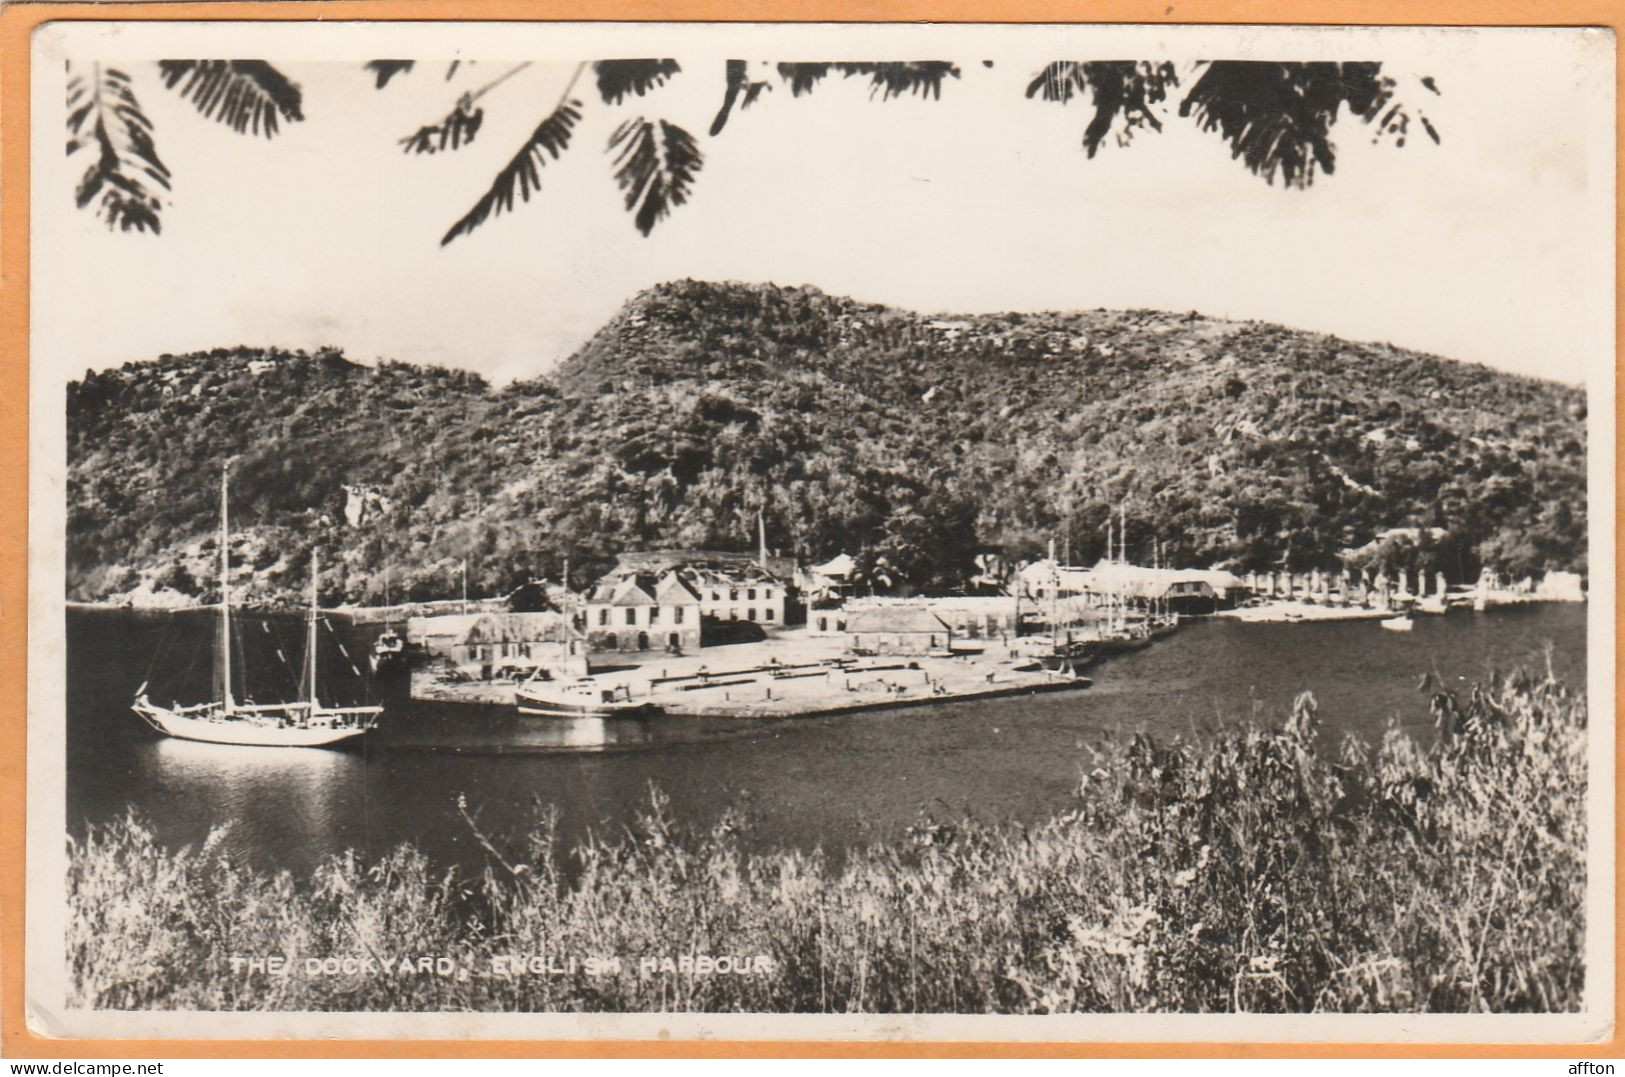 Antigua BWI Old Postcard - Antigua Und Barbuda